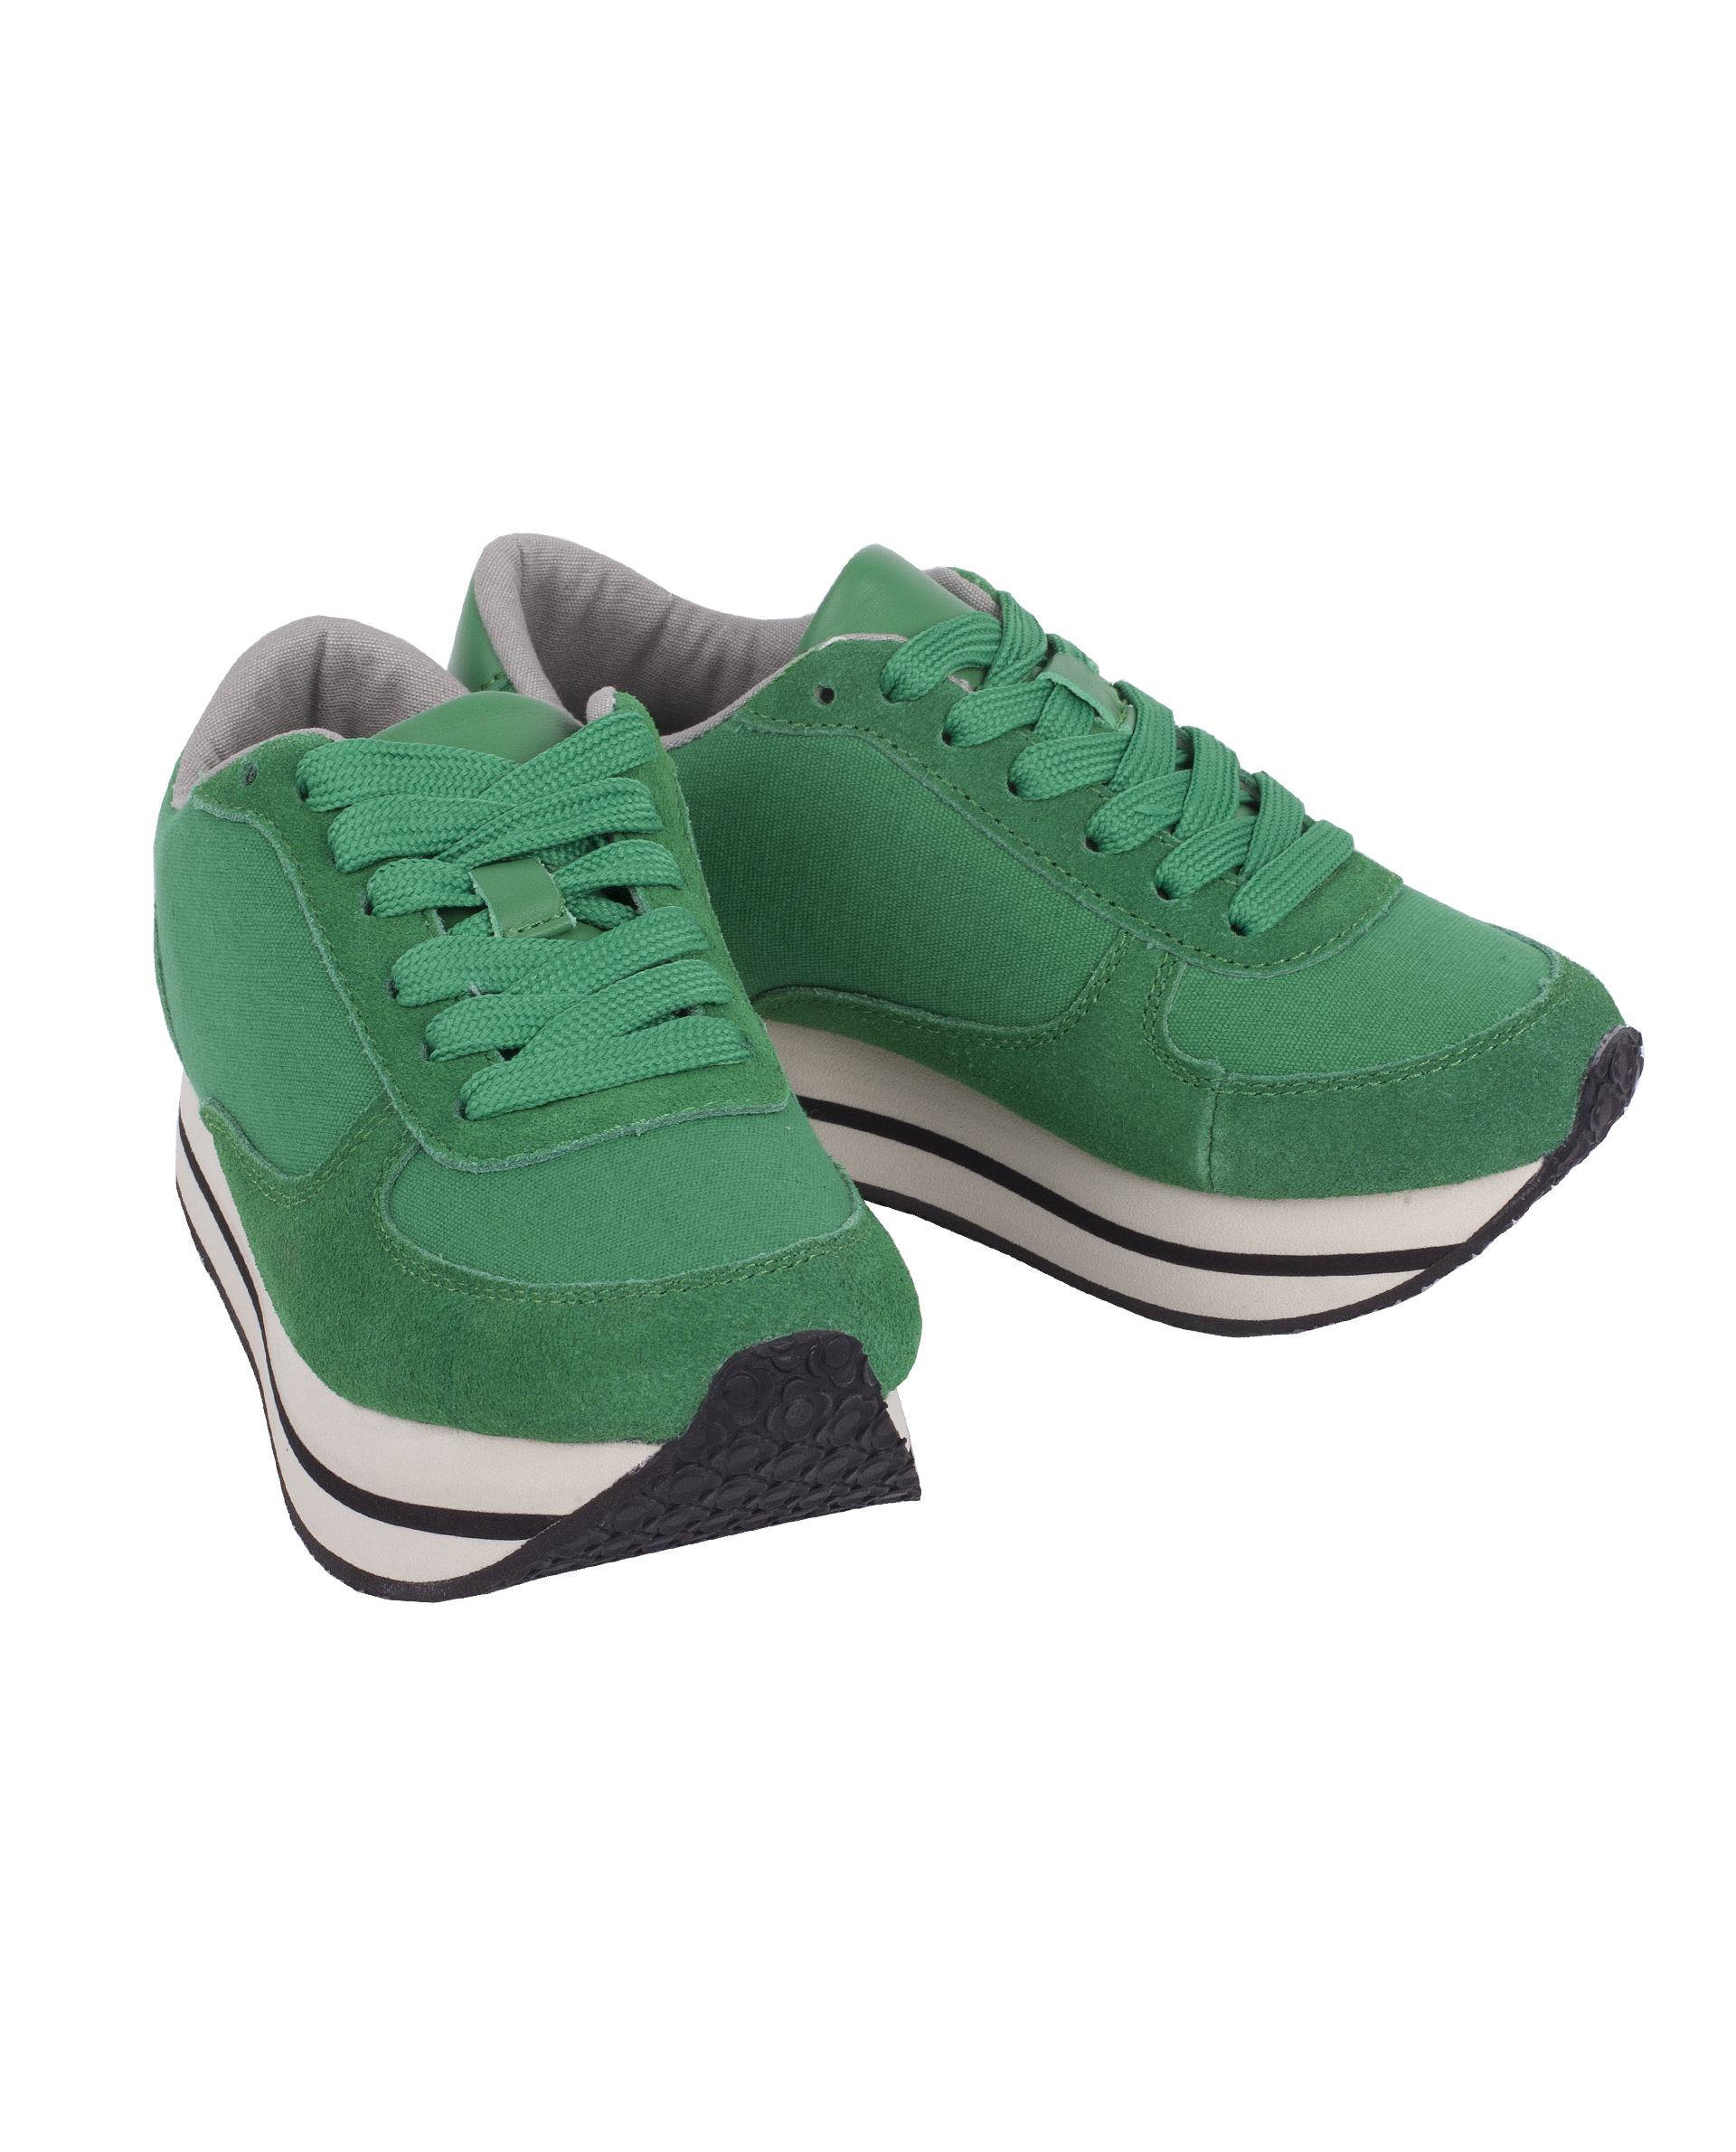 Сине зеленые кроссовки. Экко Зифлекс зеленые кроссовки 43. Kappa tifo кроссовки зеленые. Waikiki Jackson кроссовки зеленые. Изитон кроссовки зеленые.